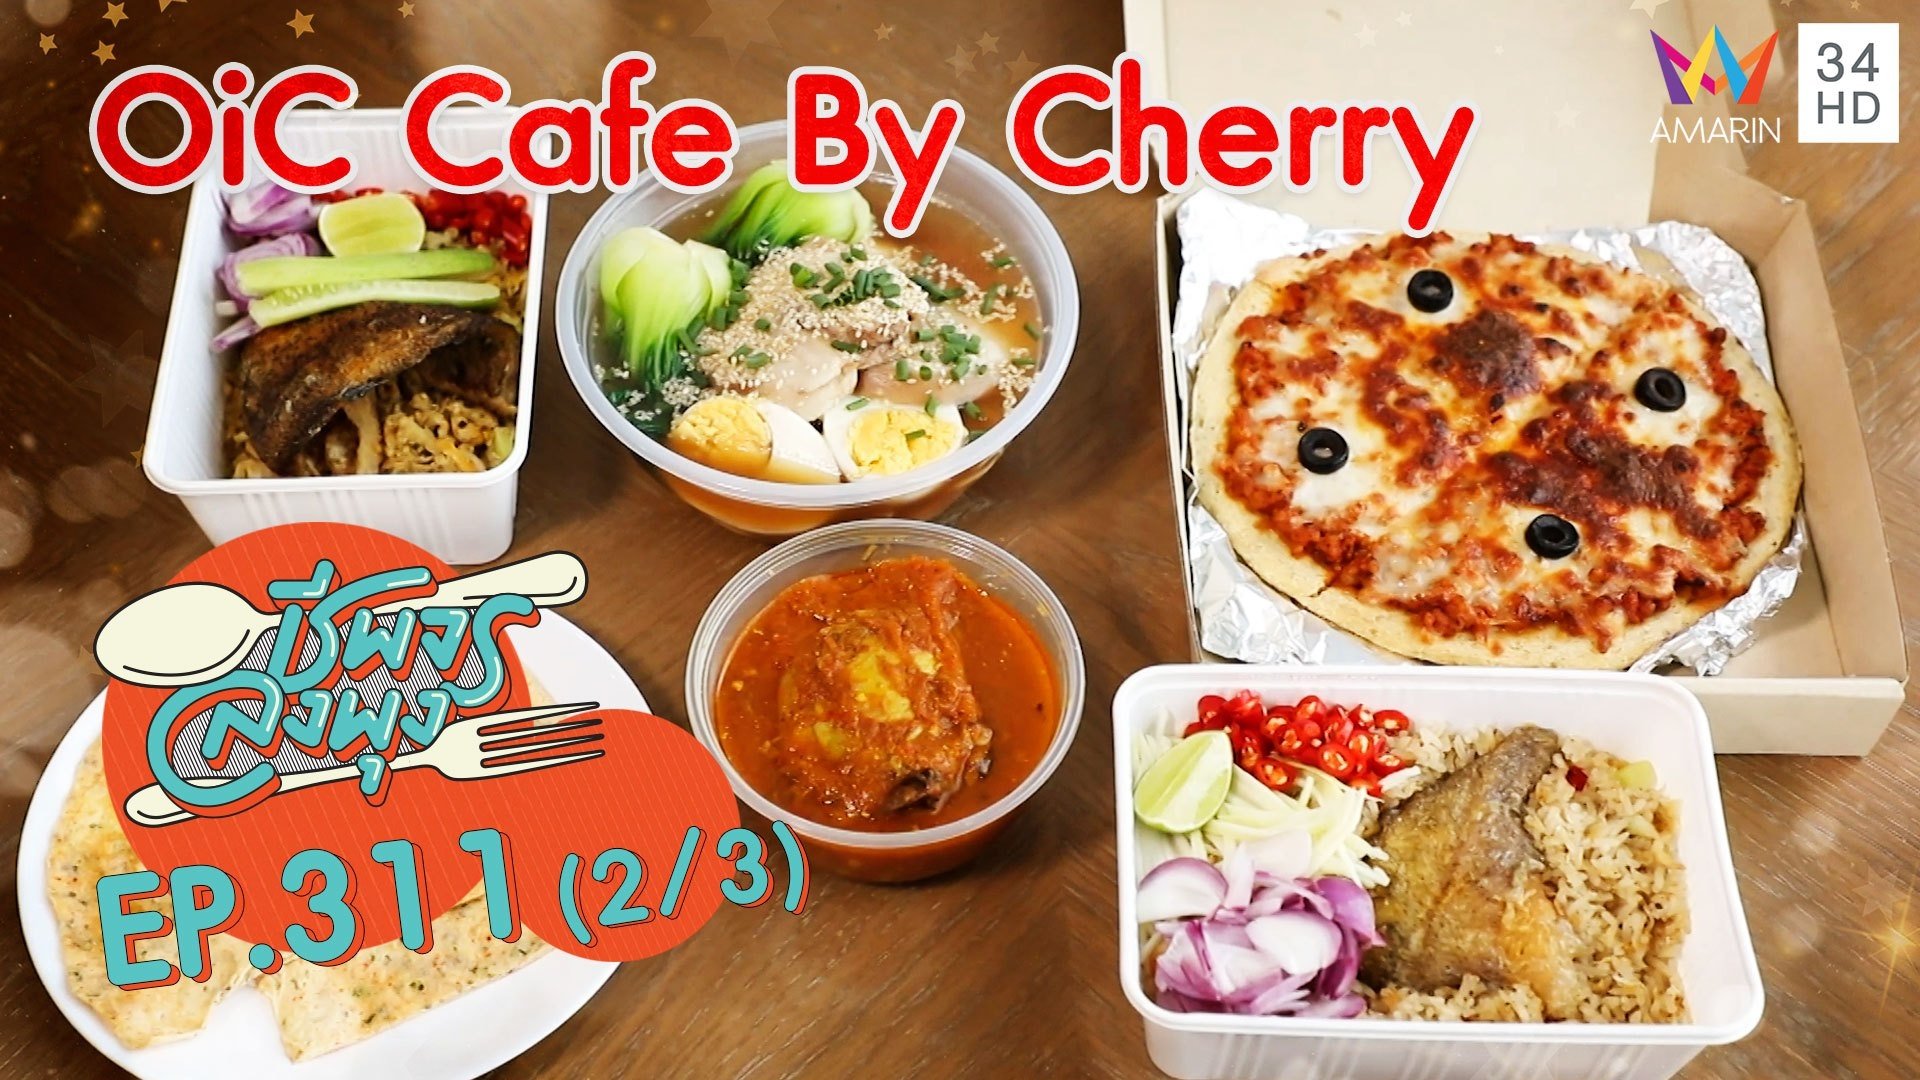 สุขภาพต้องมาควบคู่กับความอร่อย @ ร้าน OiC Cafe By Cherry | ชีพจรลงพุง | 11 ก.ค. 64 (2/3) | AMARIN TVHD34